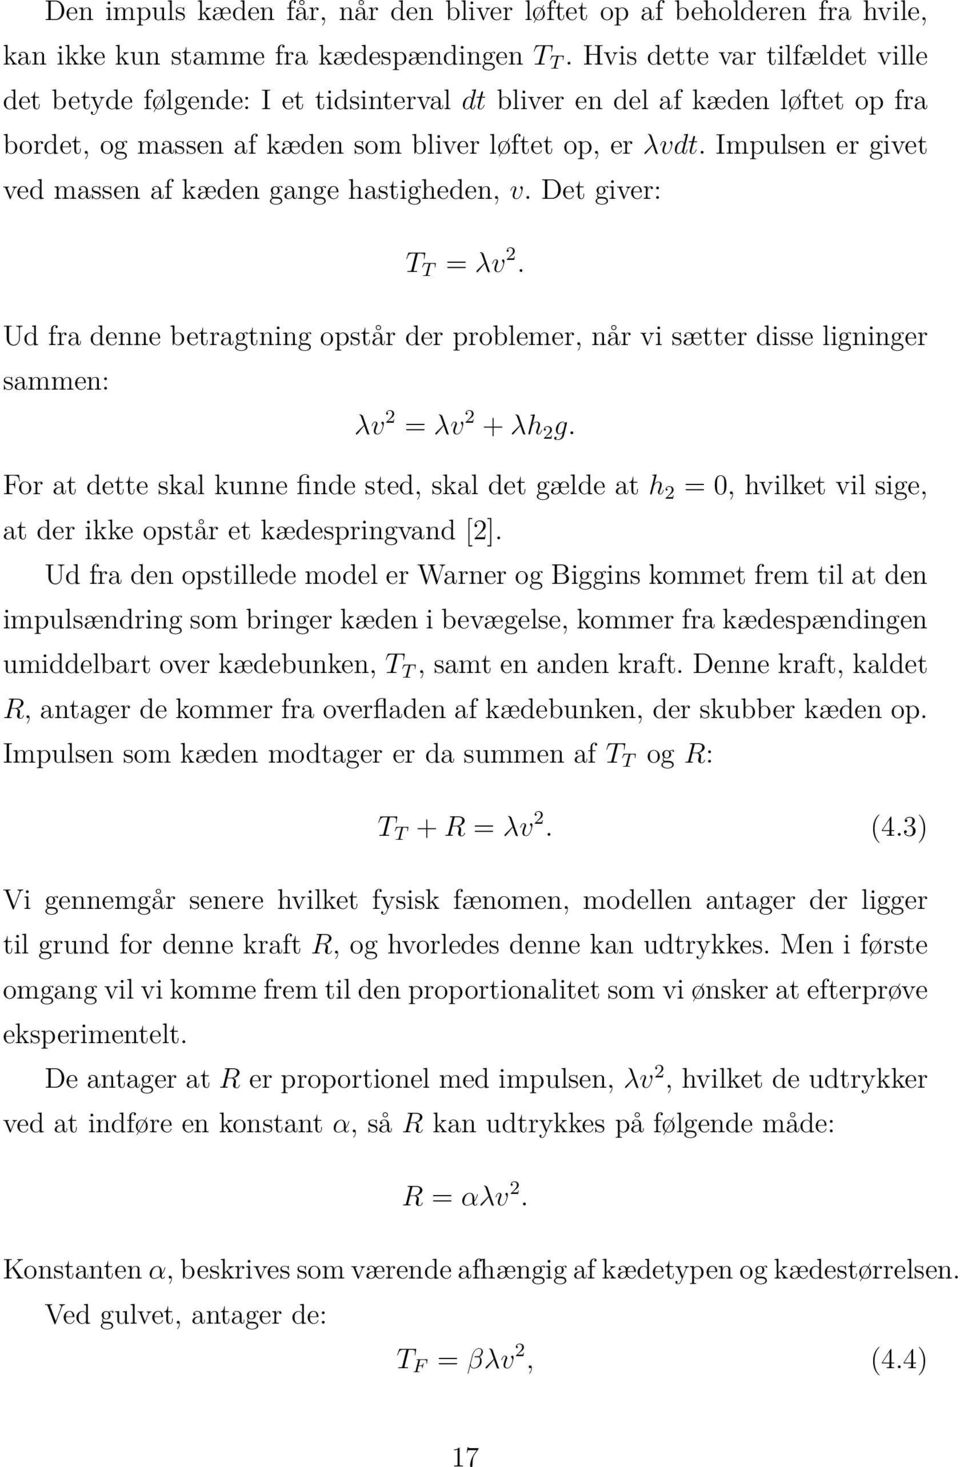 Impulsen er givet ved massen af kæden gange hastigheden, v. Det giver: T T = λv 2. Ud fra denne betragtning opstår der problemer, når vi sætter disse ligninger sammen: λv 2 = λv 2 + λh 2 g.